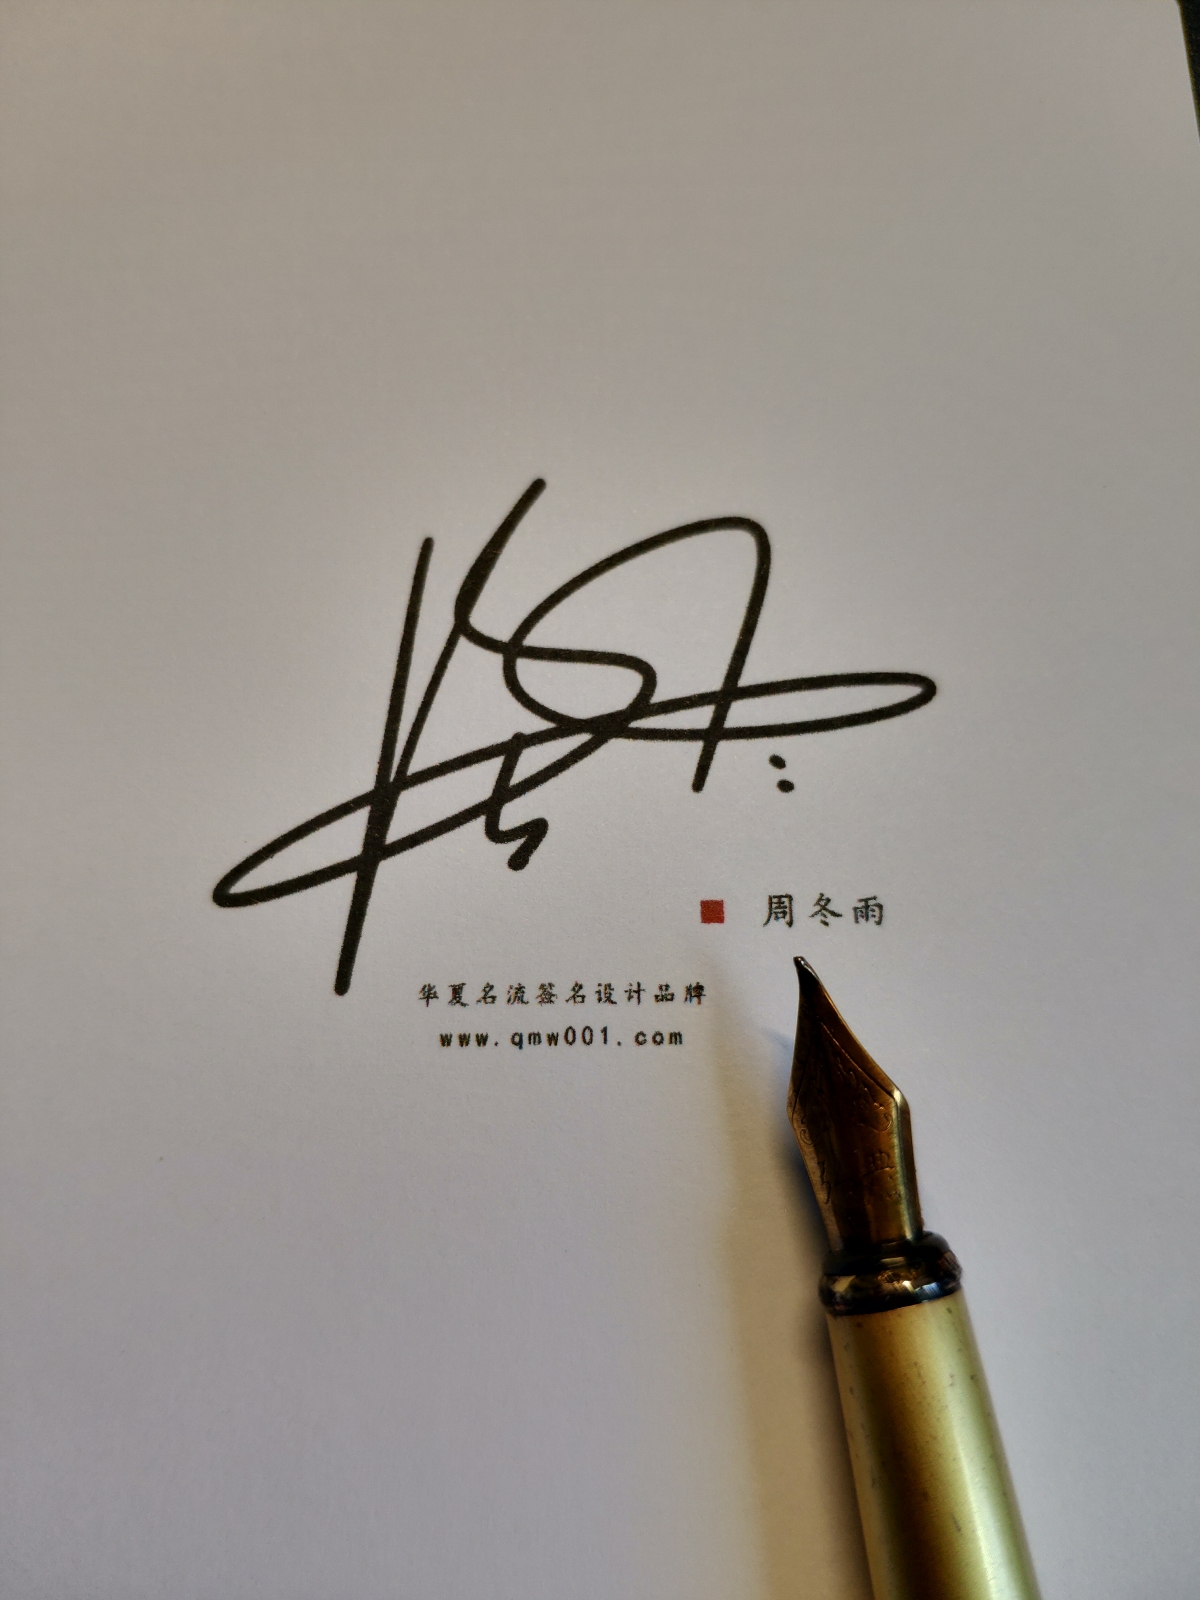 艺术签名丨签名设计丨艺术签名设计